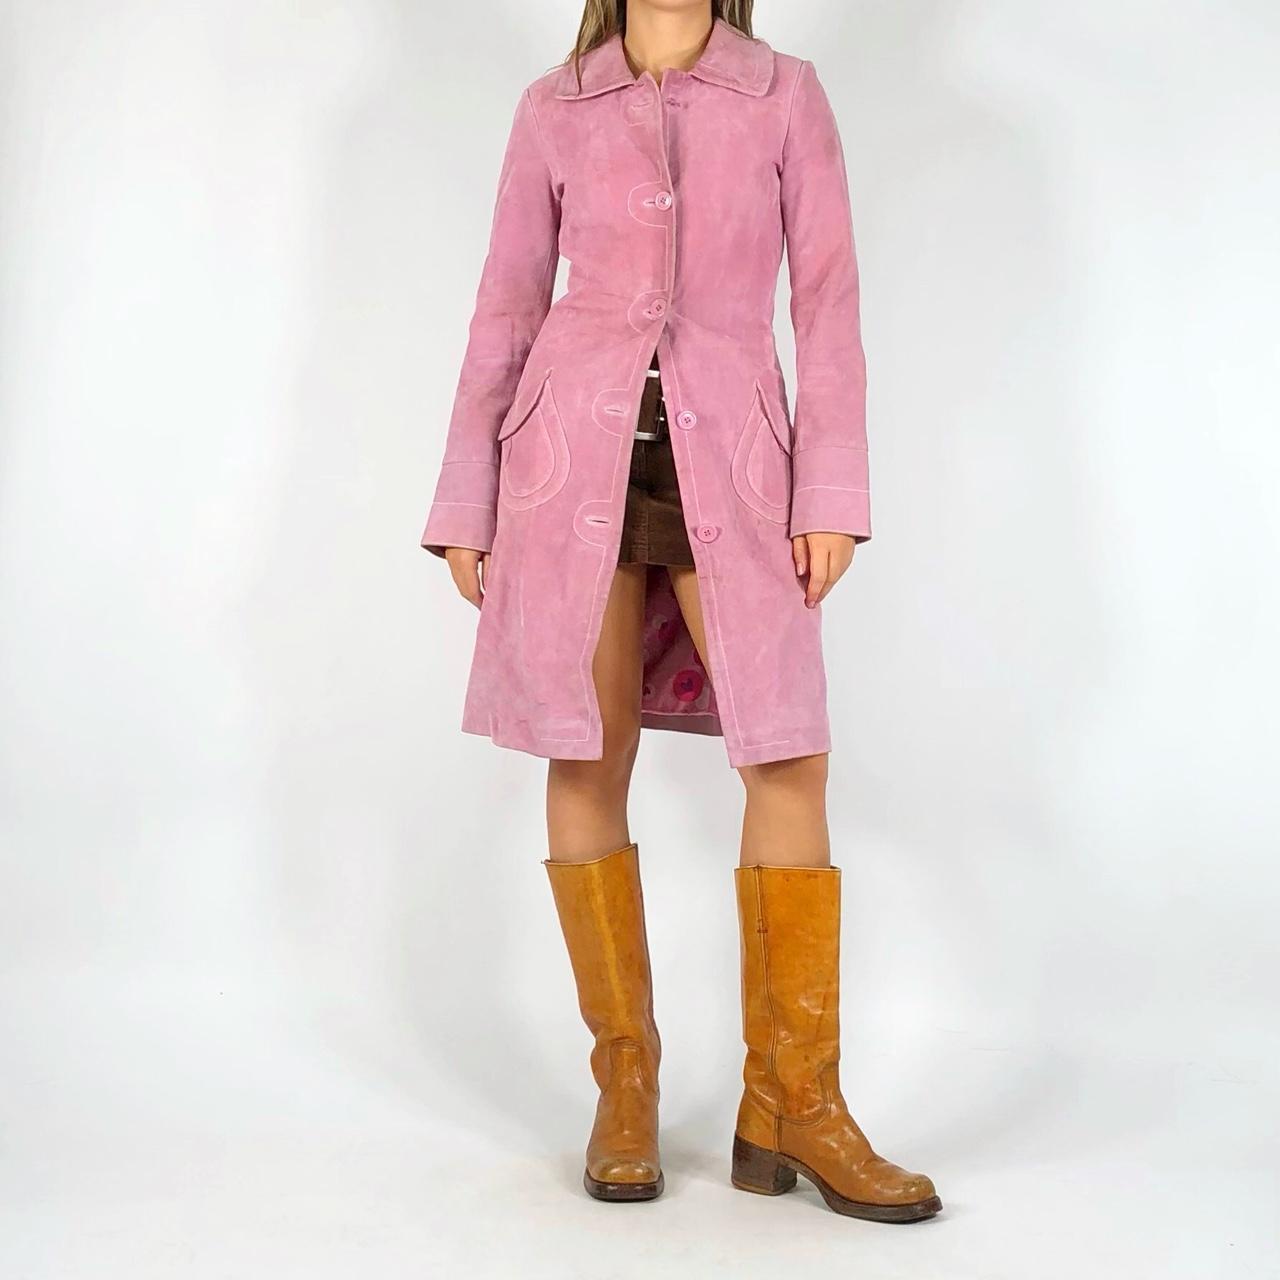 XOXO Women's Pink Jacket (2)